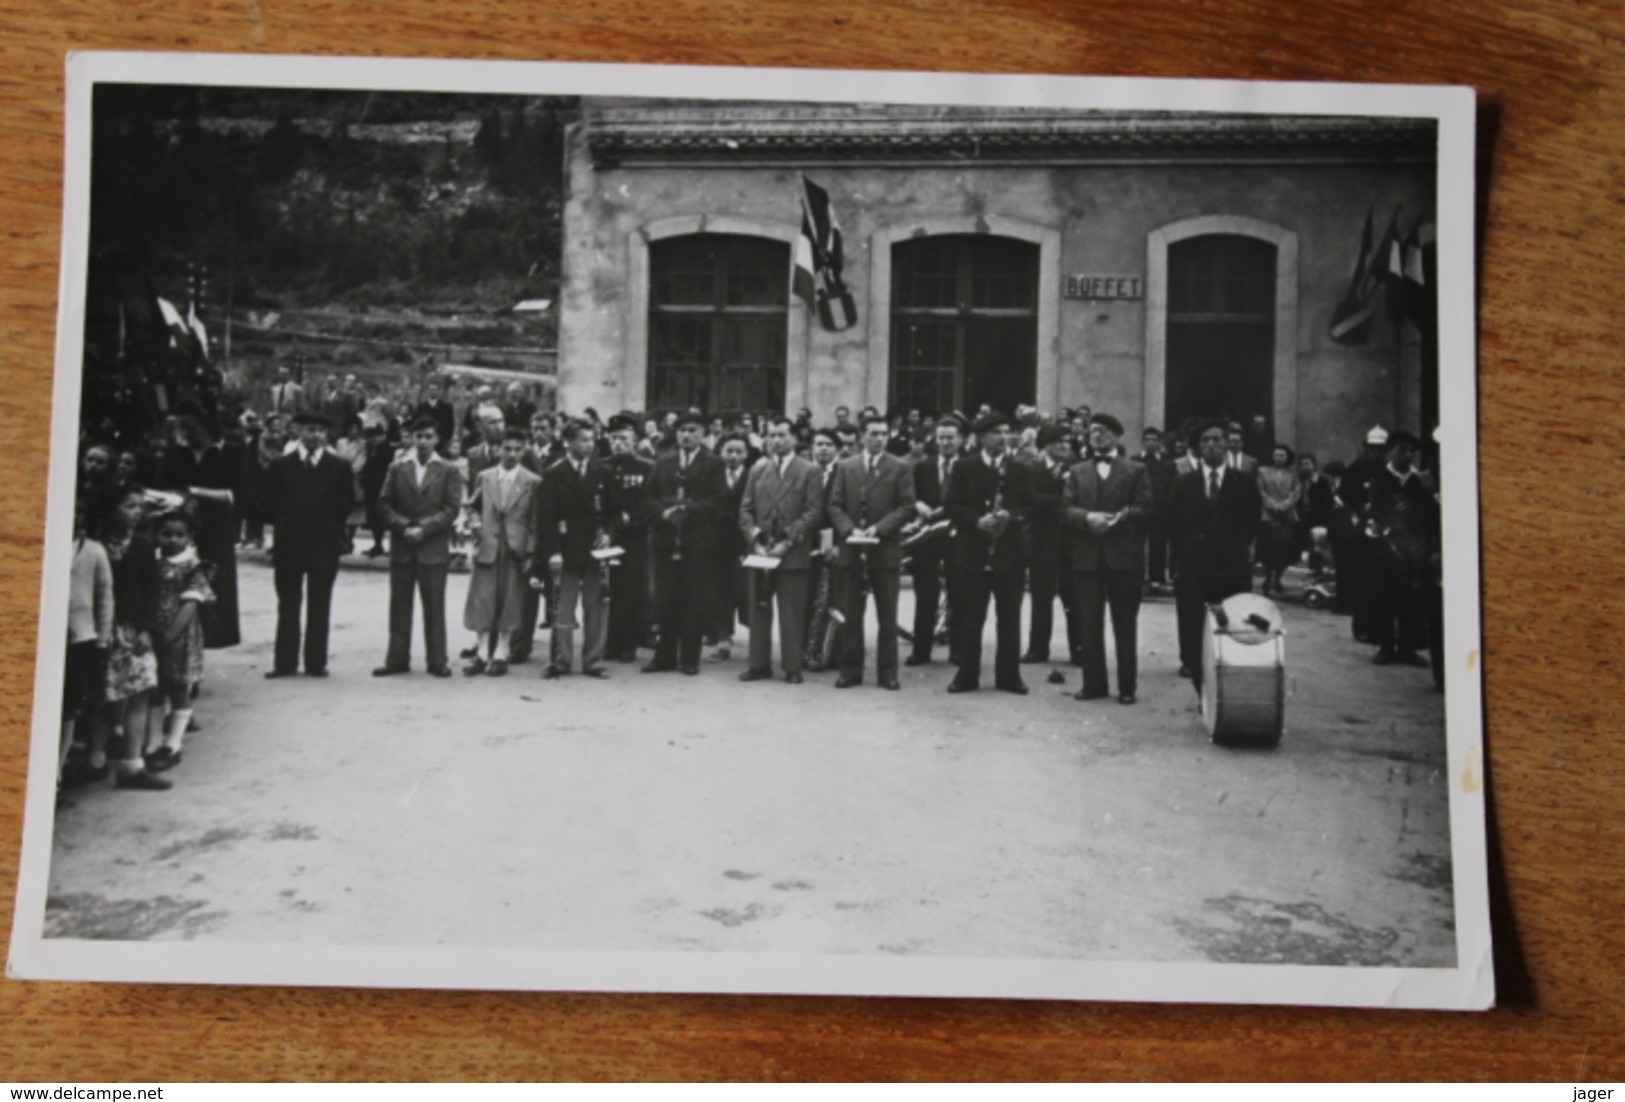 Serie de Photos MODANE Savoie 1946  fete de la Liberation bataillon de chasseurs alpins